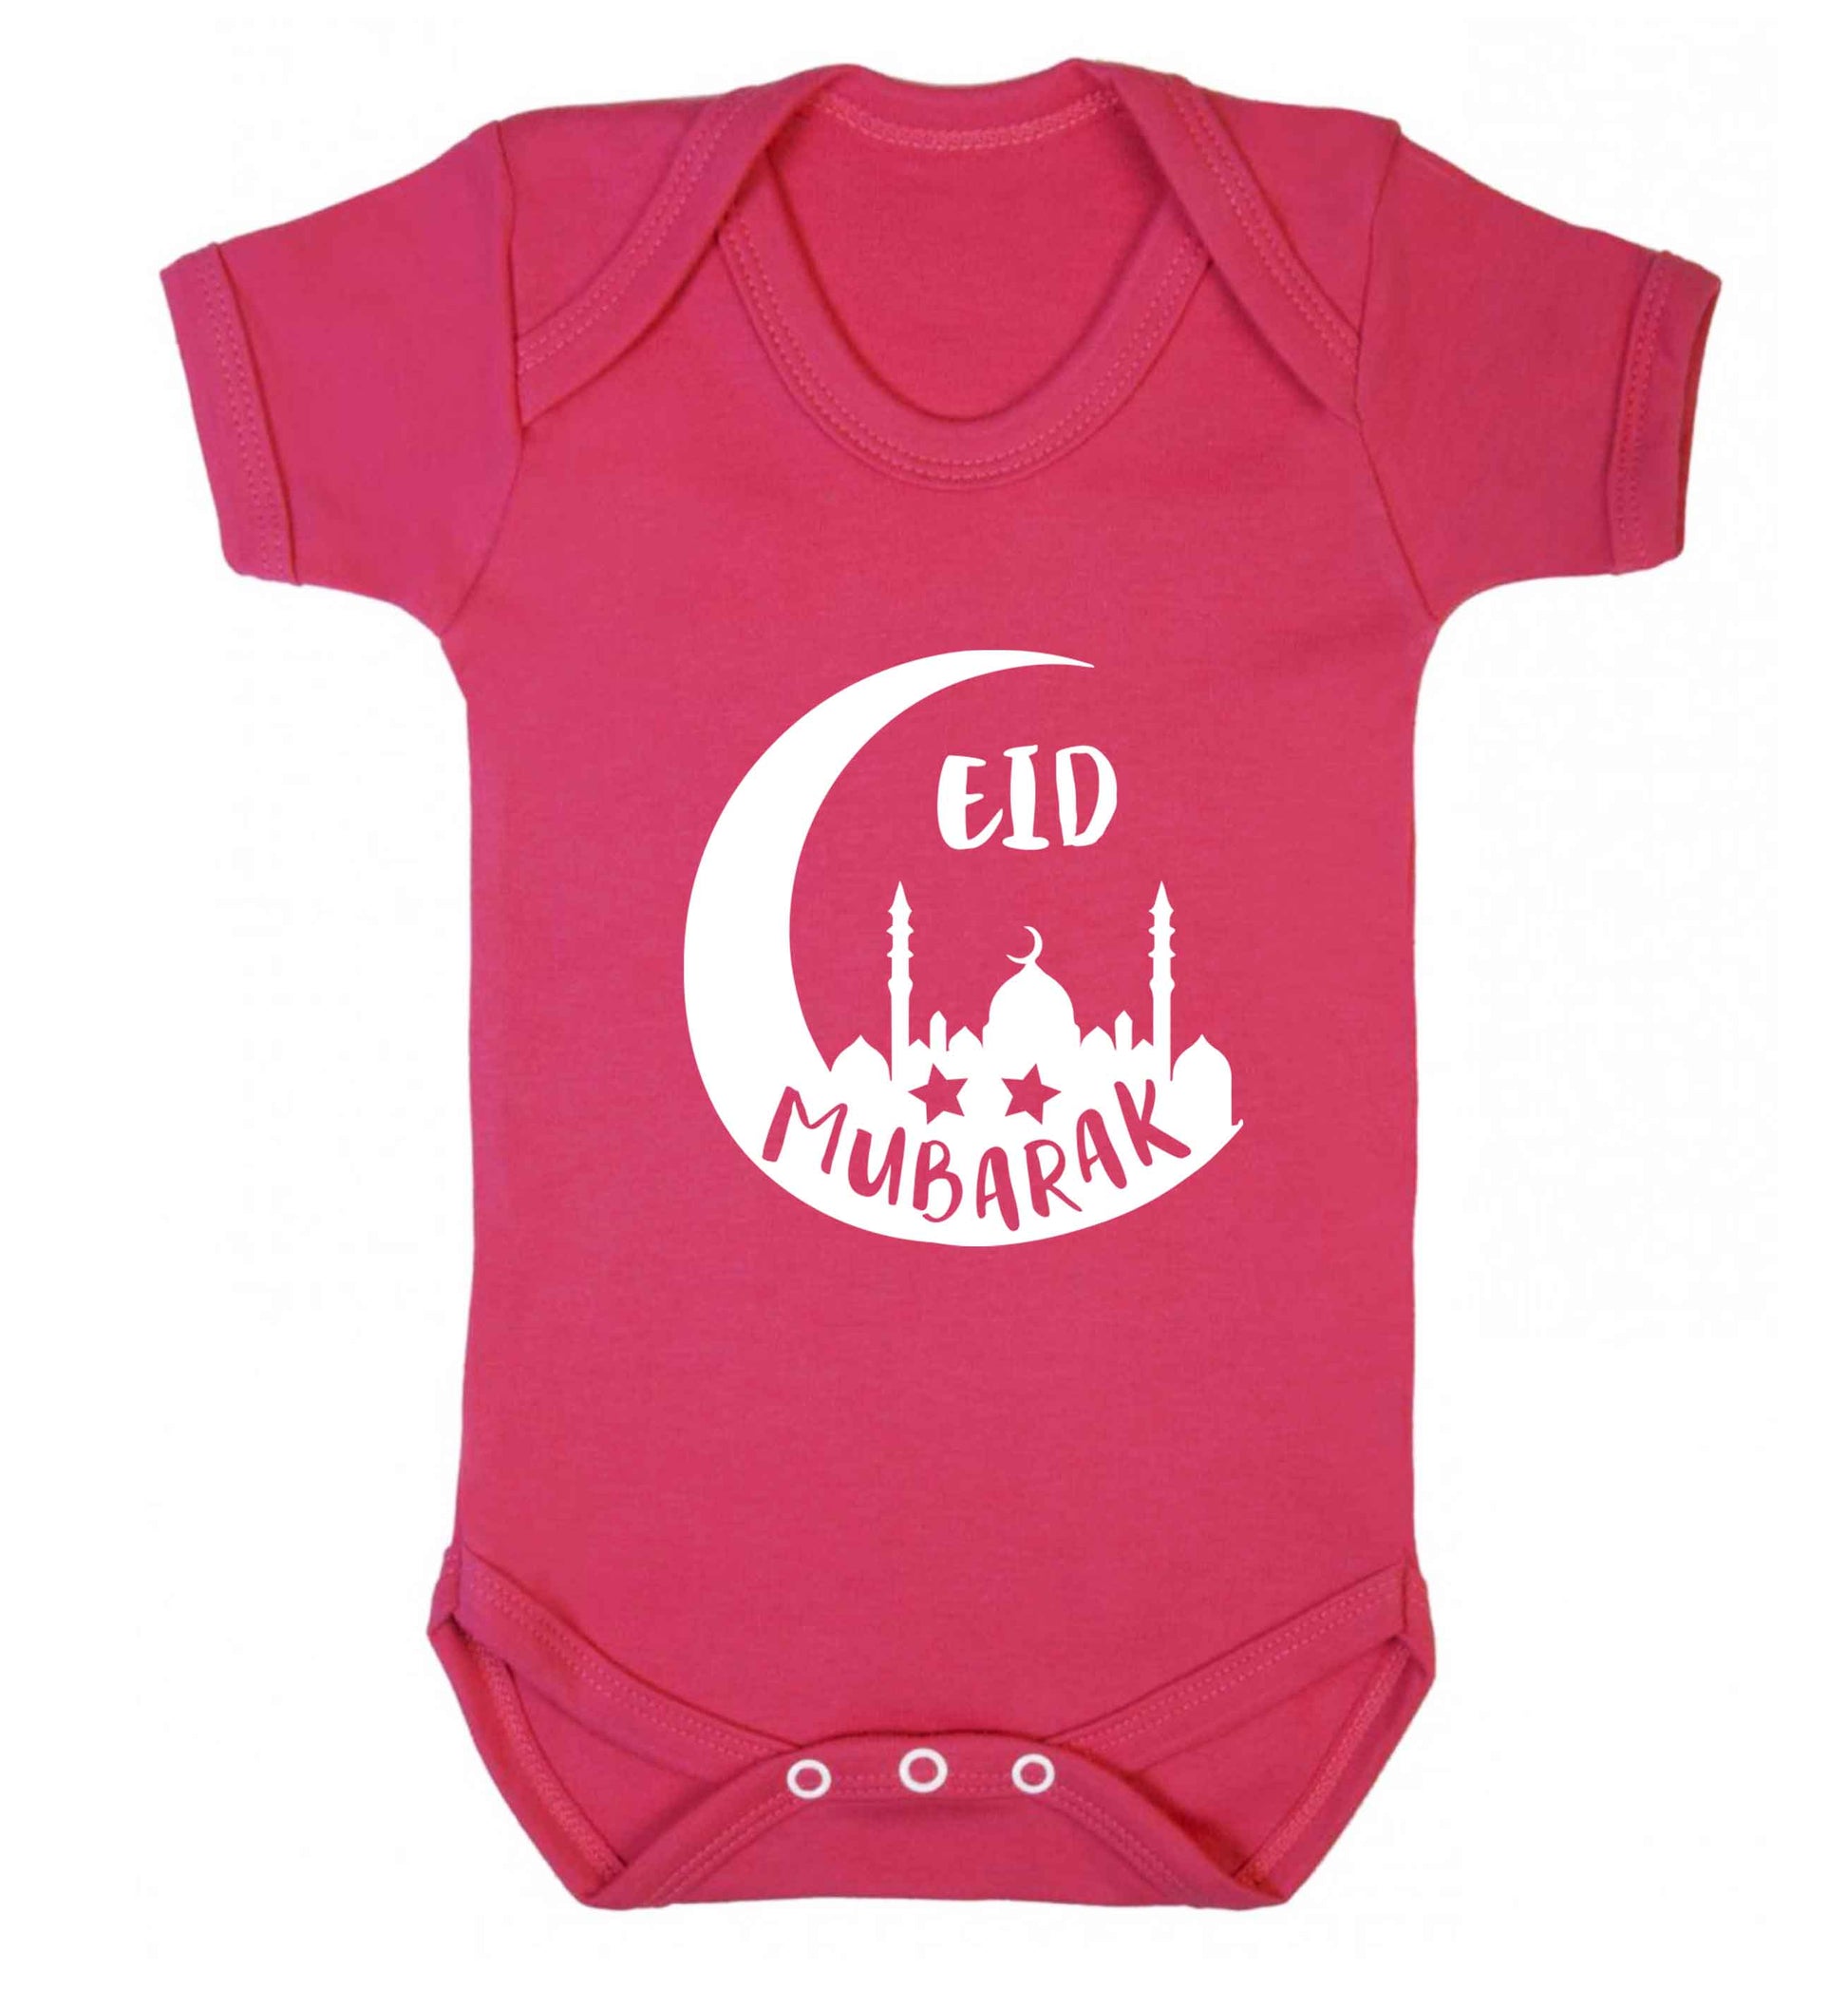 Eid mubarak baby vest dark pink 18-24 months